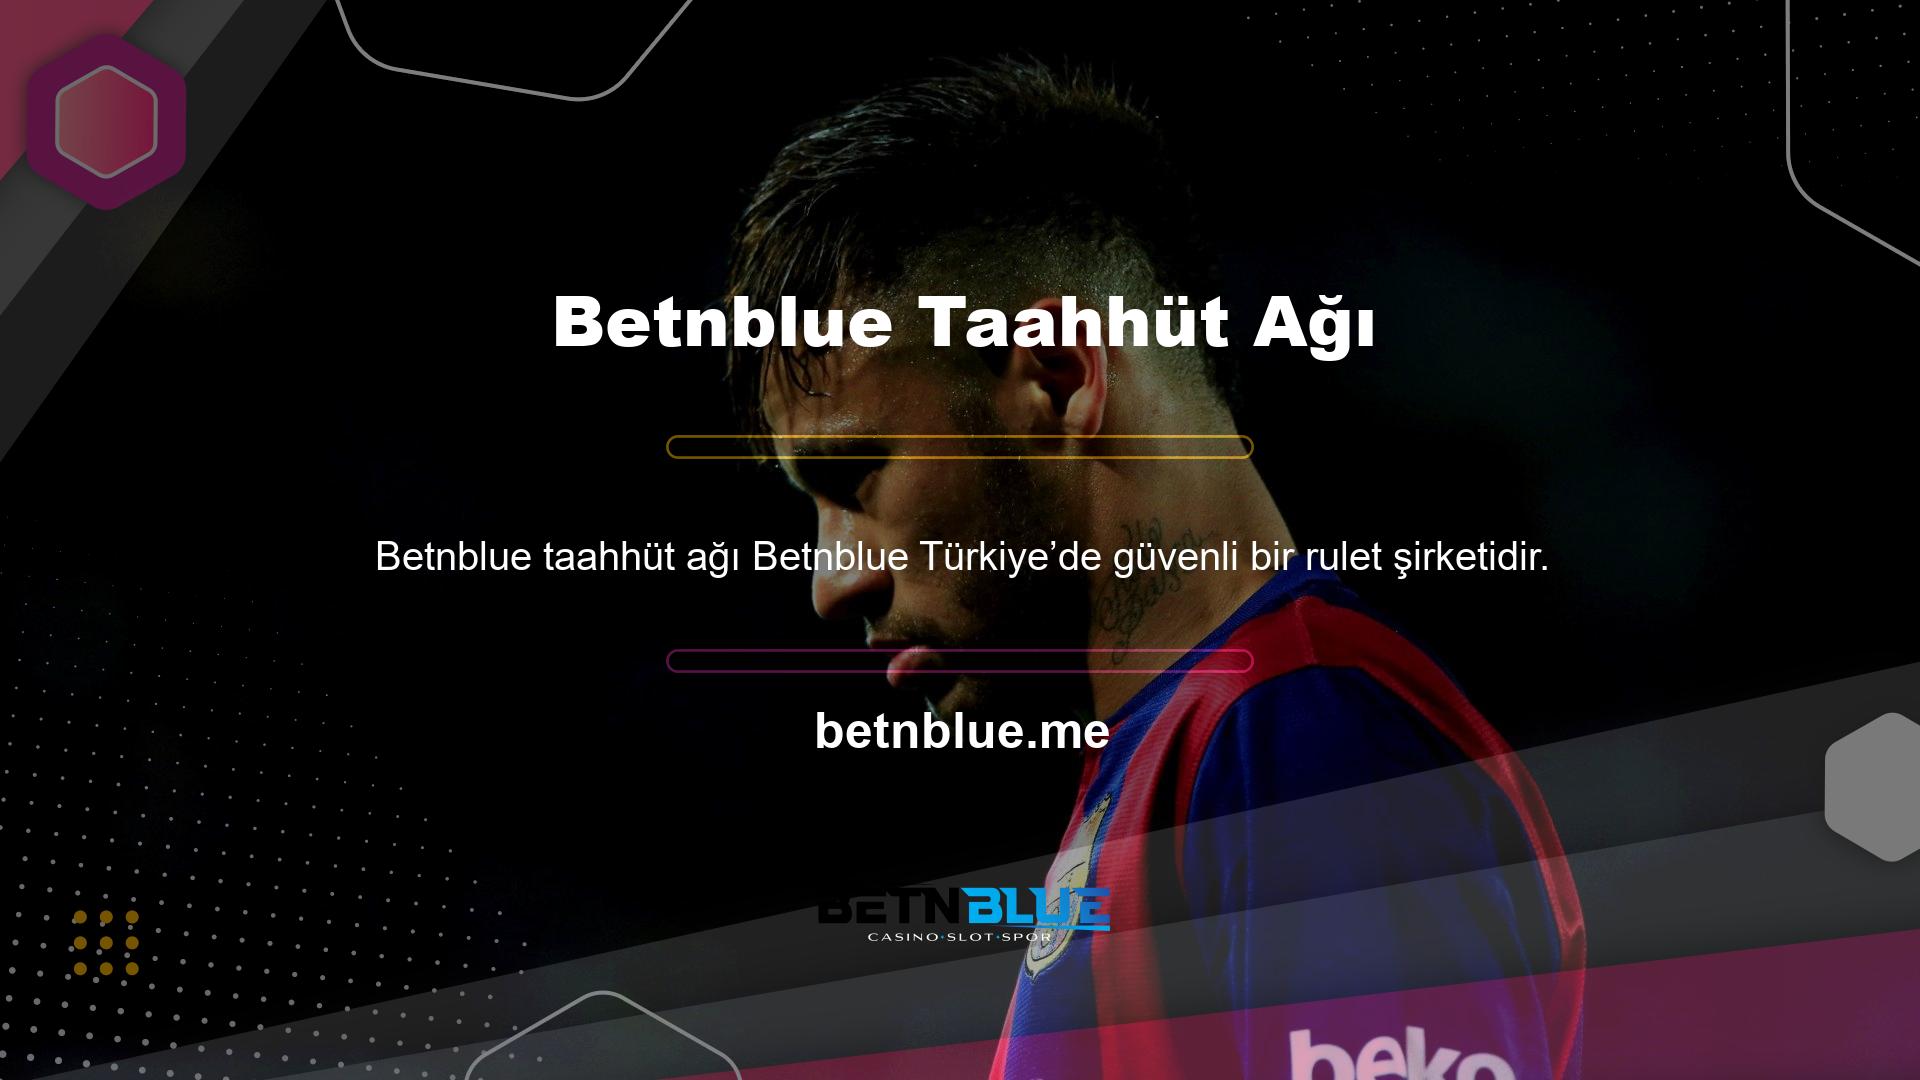 Betnblue, tüm Türk rulet oyuncuları arasında güvenilir ve popüler bir bahis şirketidir